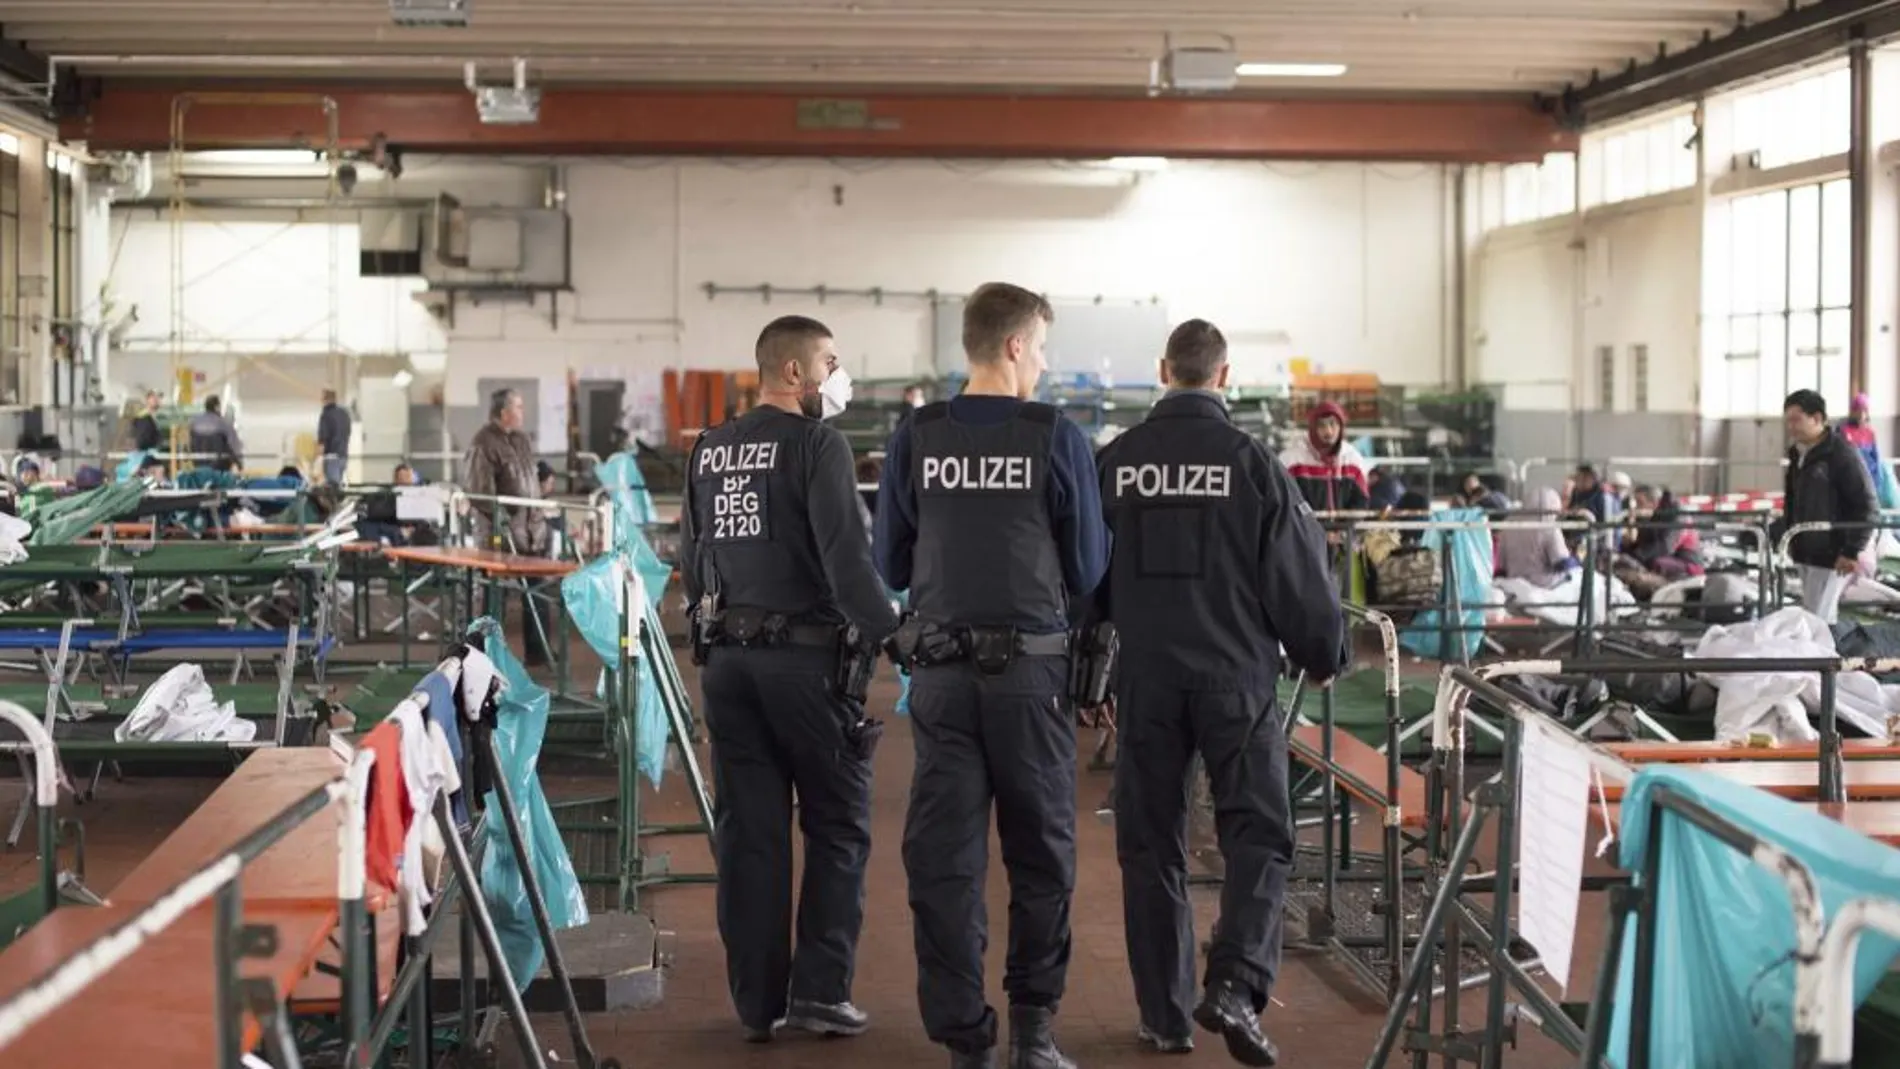 Agentes de policía inspeccionan un campamento de refugiados en Passau, Alemania, hoy, 30 de octubre de 2015.